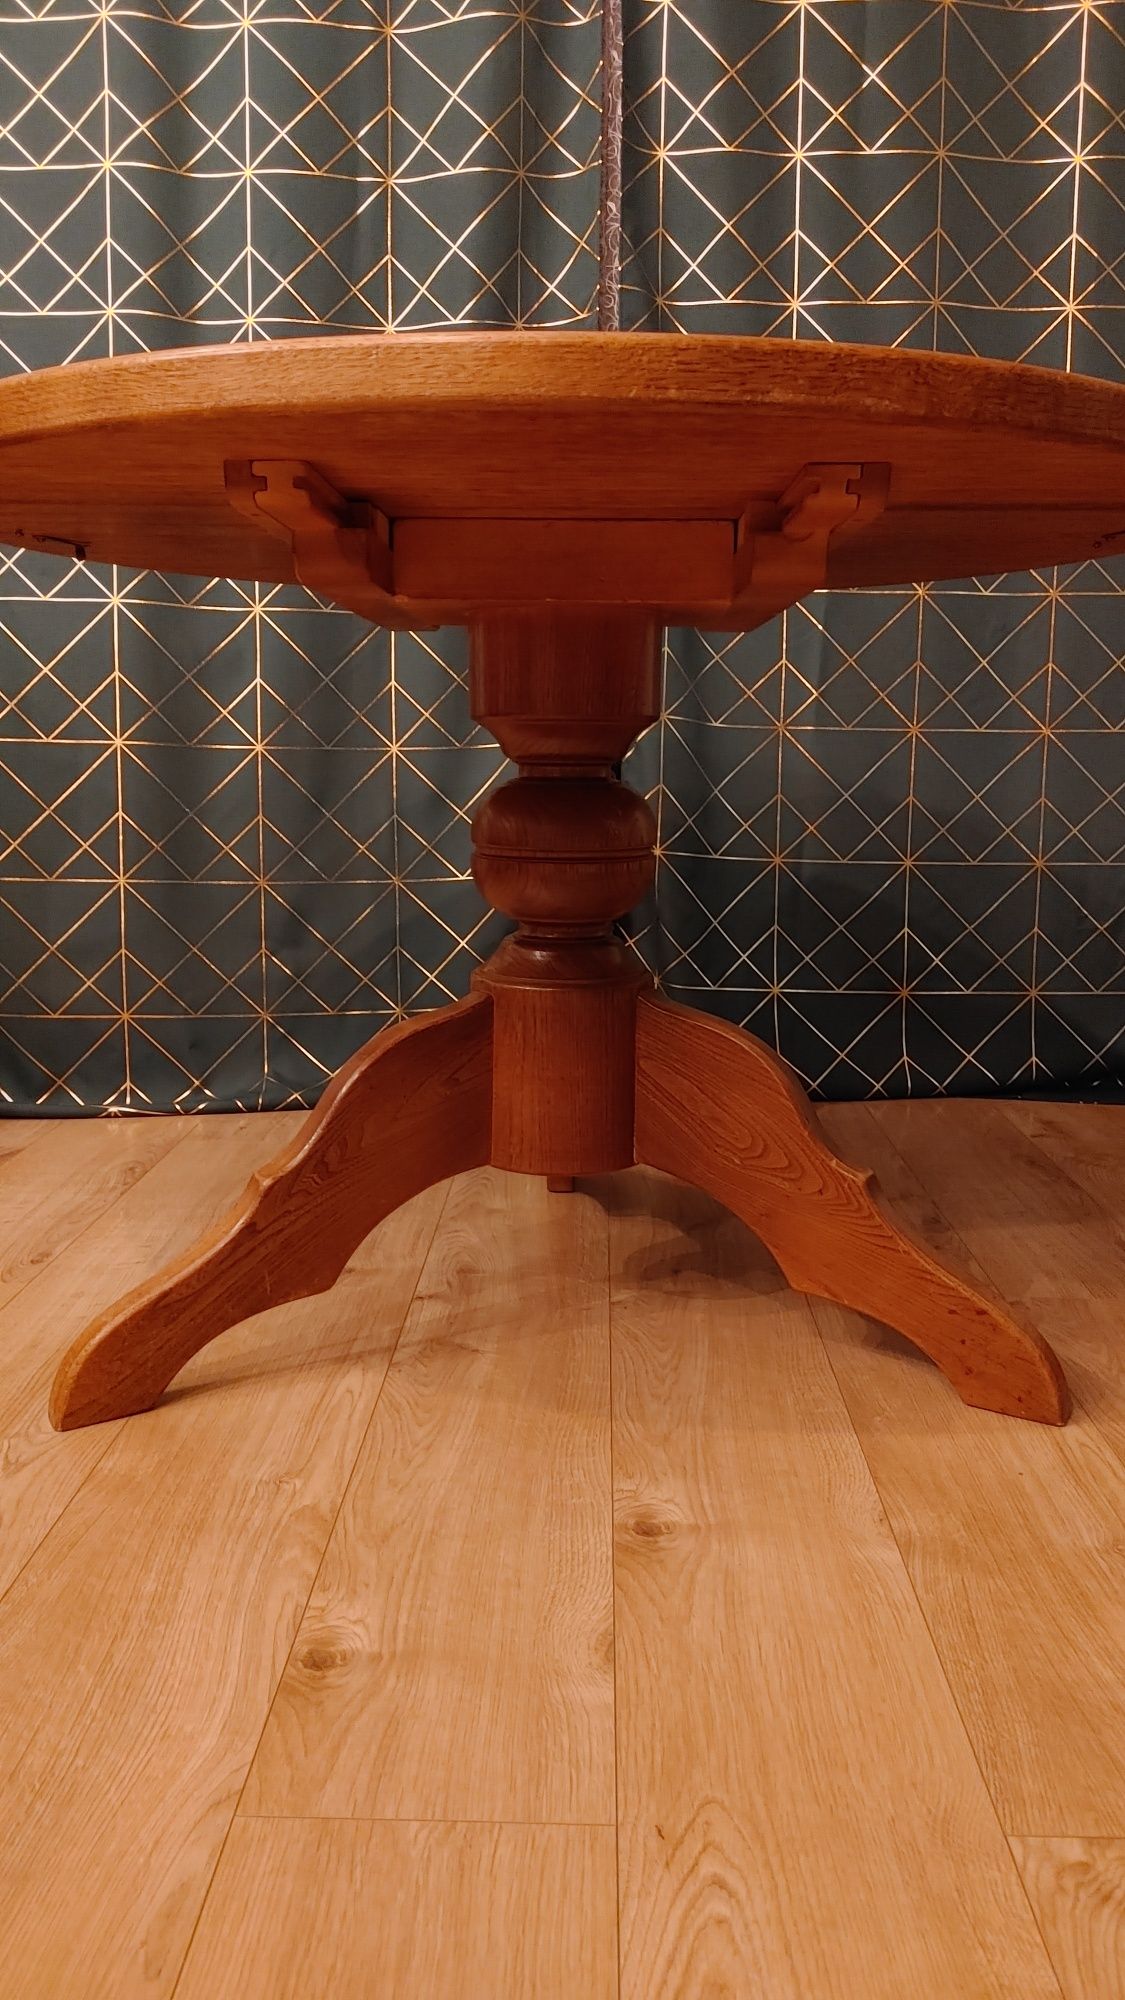 Stół drewniany okrągły 105 cm trzy nogi